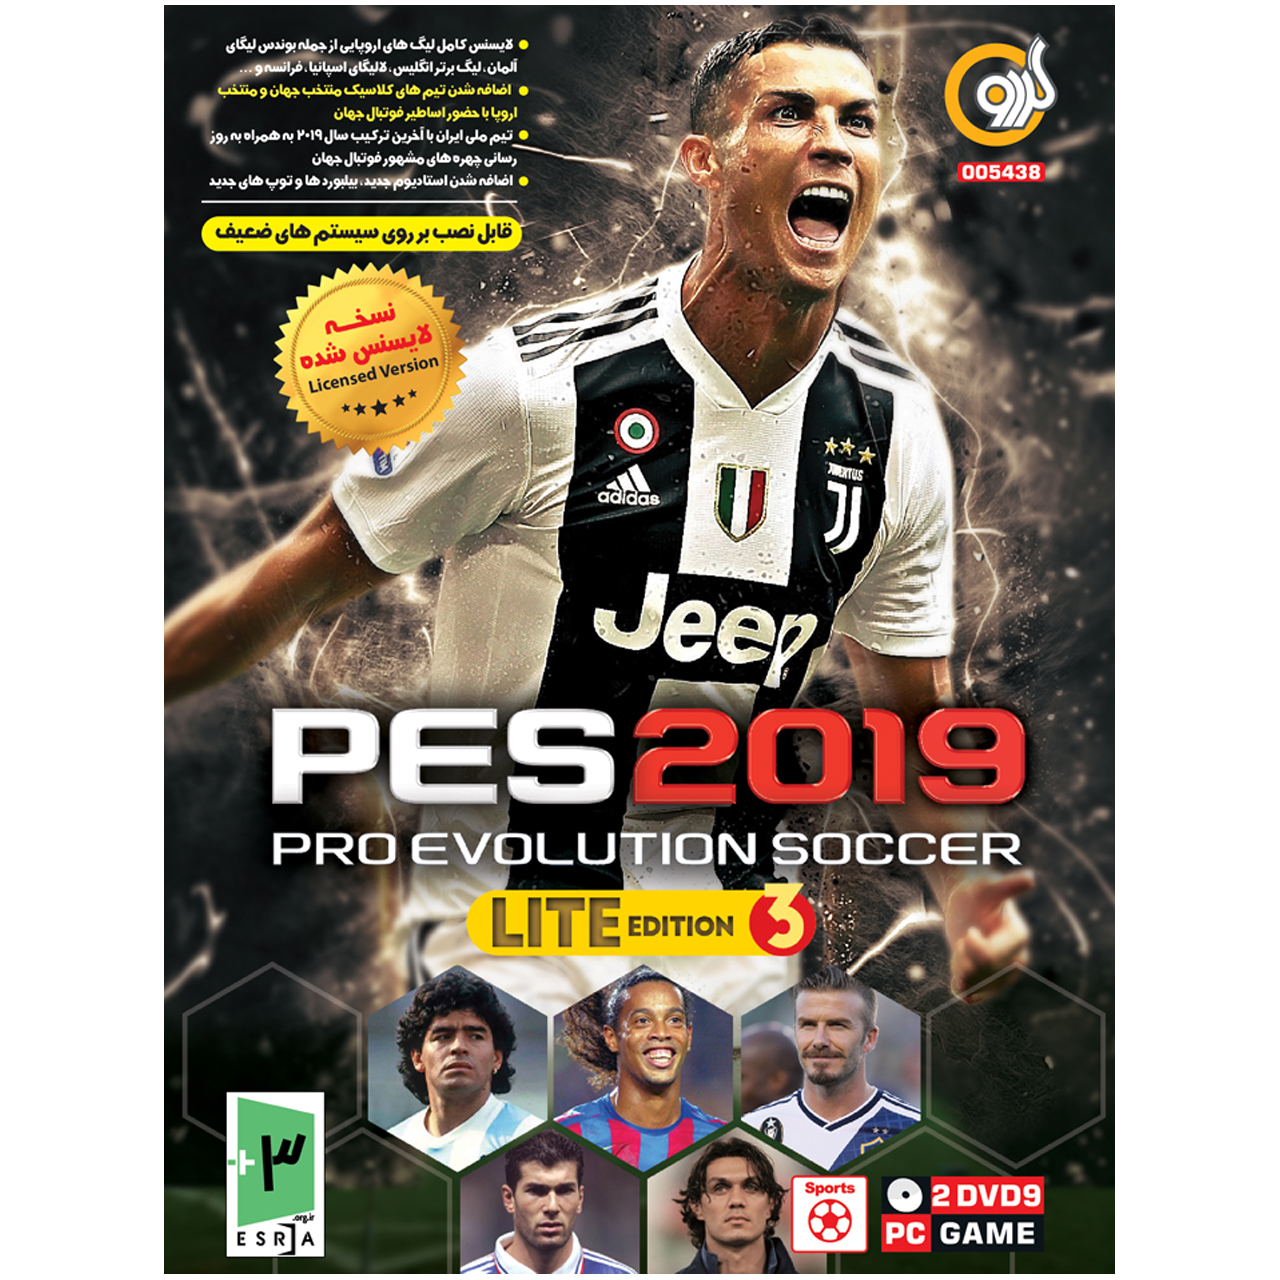 بازی گردو PES 2019 Pro Evolution Soccer lite edition 3 مخصوص PC